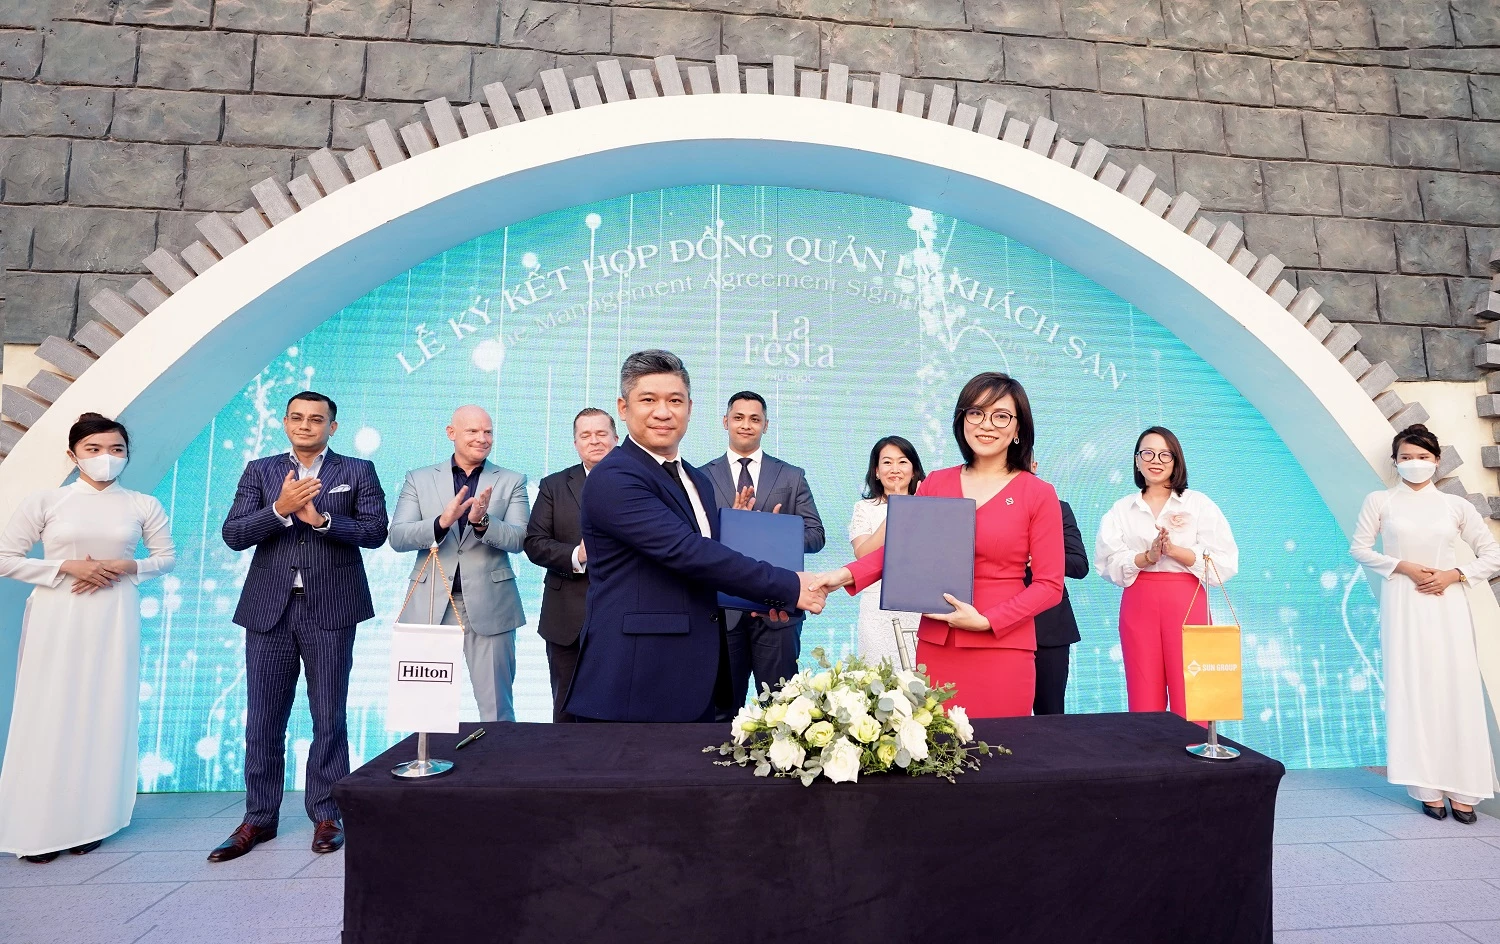 Lễ ký kết hợp đồng quản lý khách sạn La Festa Phu Quoc giữa Sun Group và Hilton Worldwide.